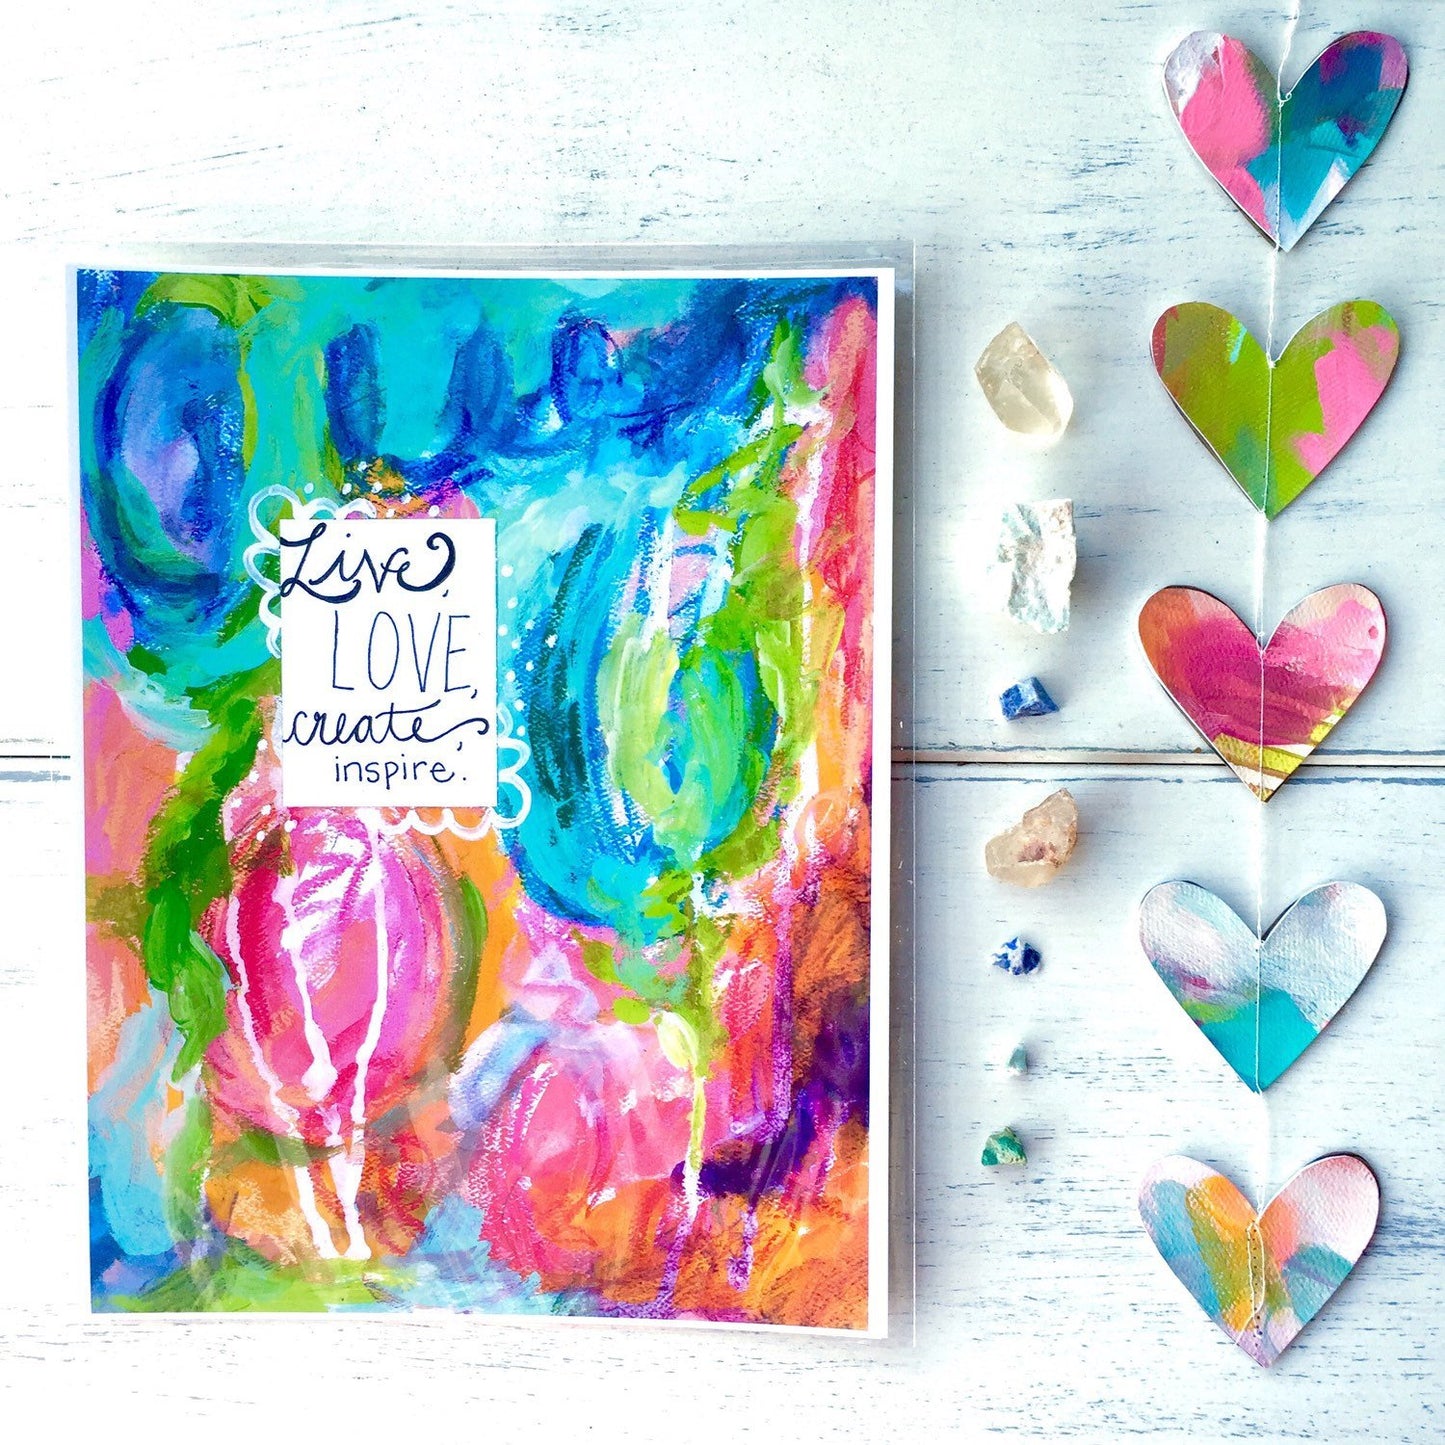 Mixed Media Paper Print: "Live, Love, Create, Inspire" - Bethany Joy Art